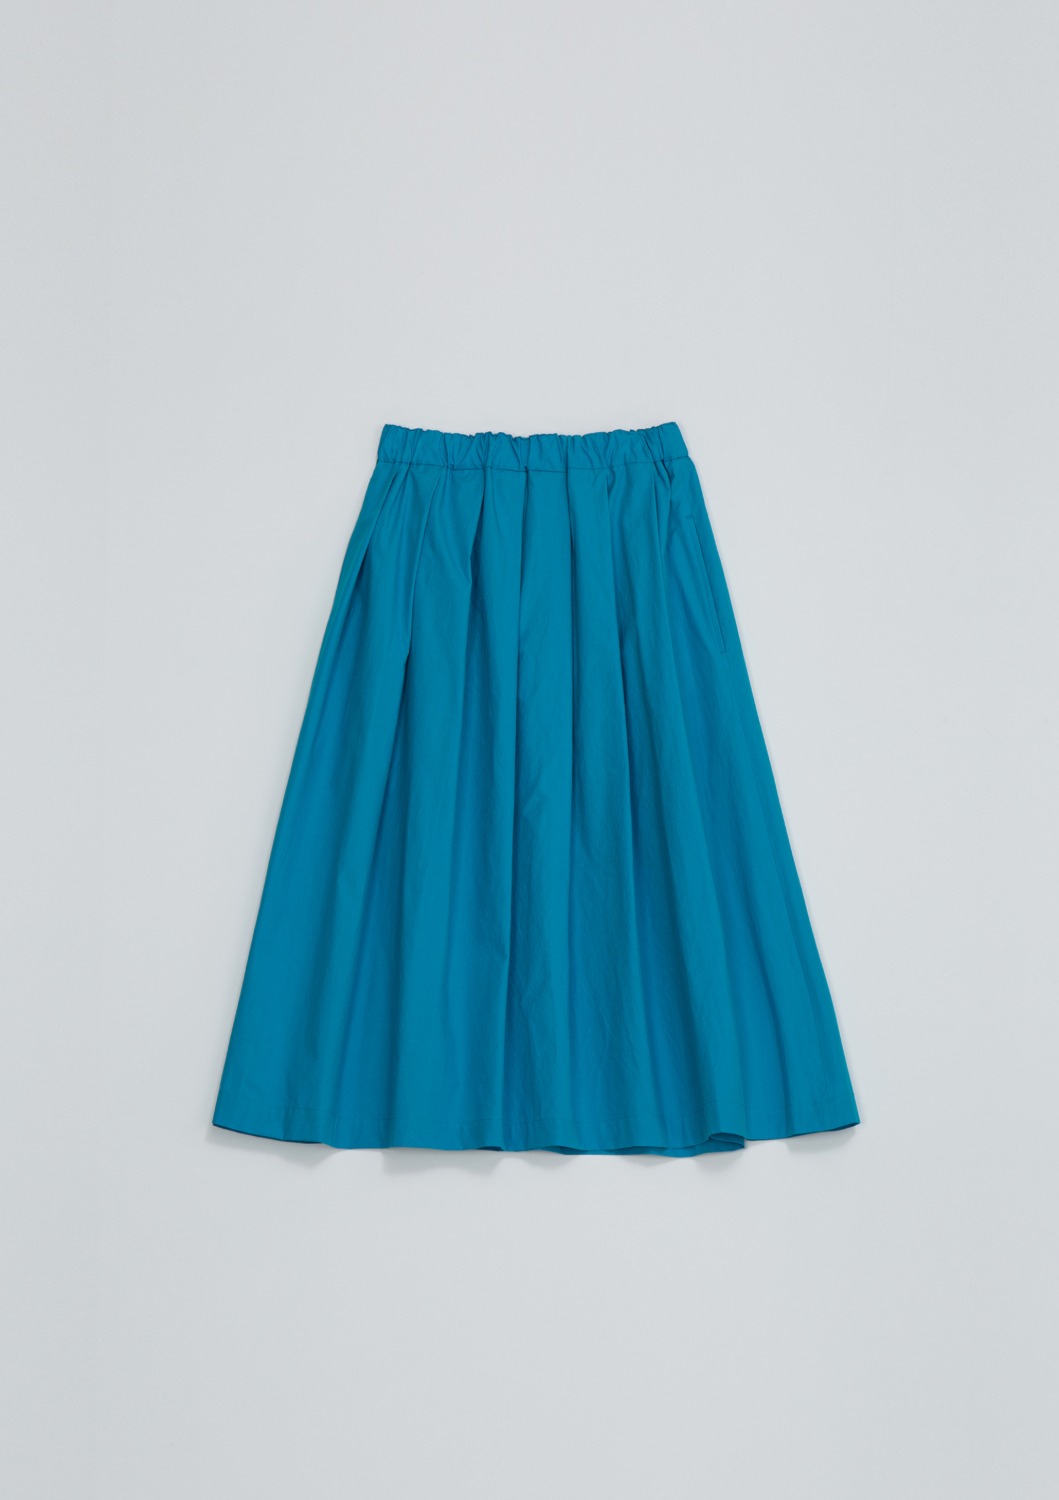 [End Sale]Layla Skirt - Aqua Blue Cotton